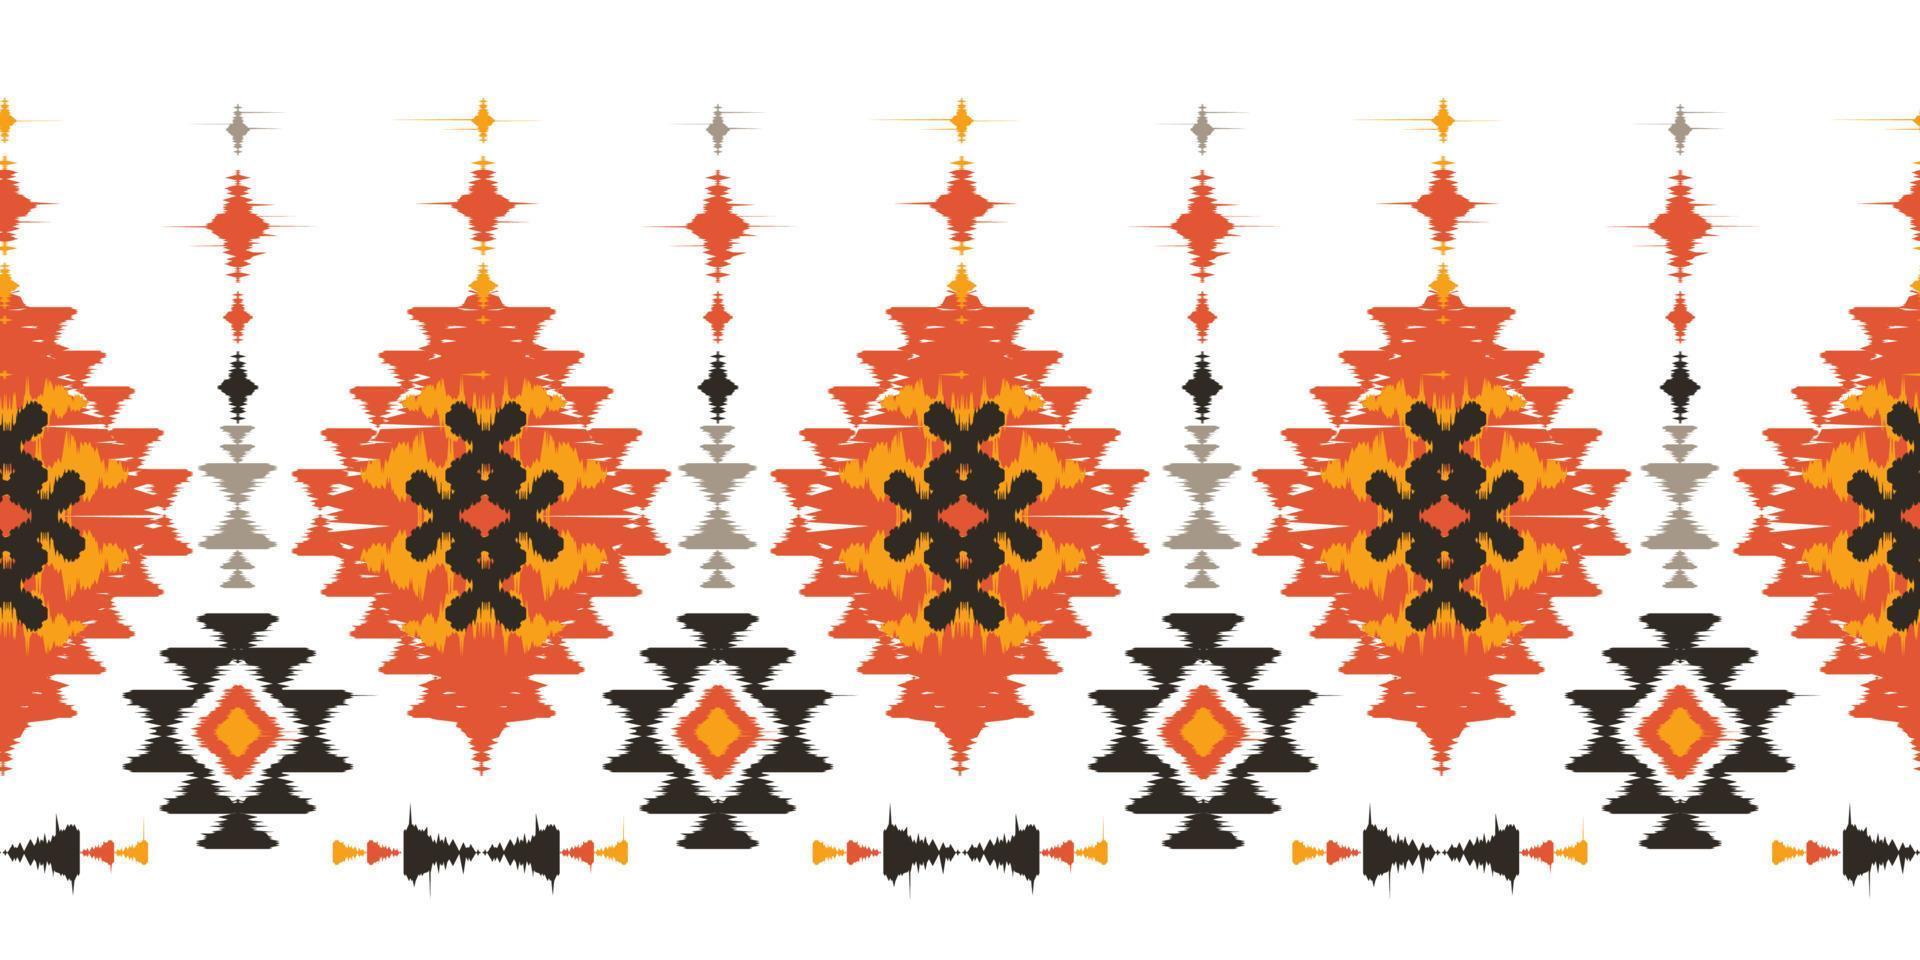 ikat fait à la main borde le bel art. motif harmonieux de chevron navajo en broderie tribale, folklorique, ornement d'art géométrique aztèque mexicain print.design pour tapis, emballage, tissu, couverture, textile vecteur